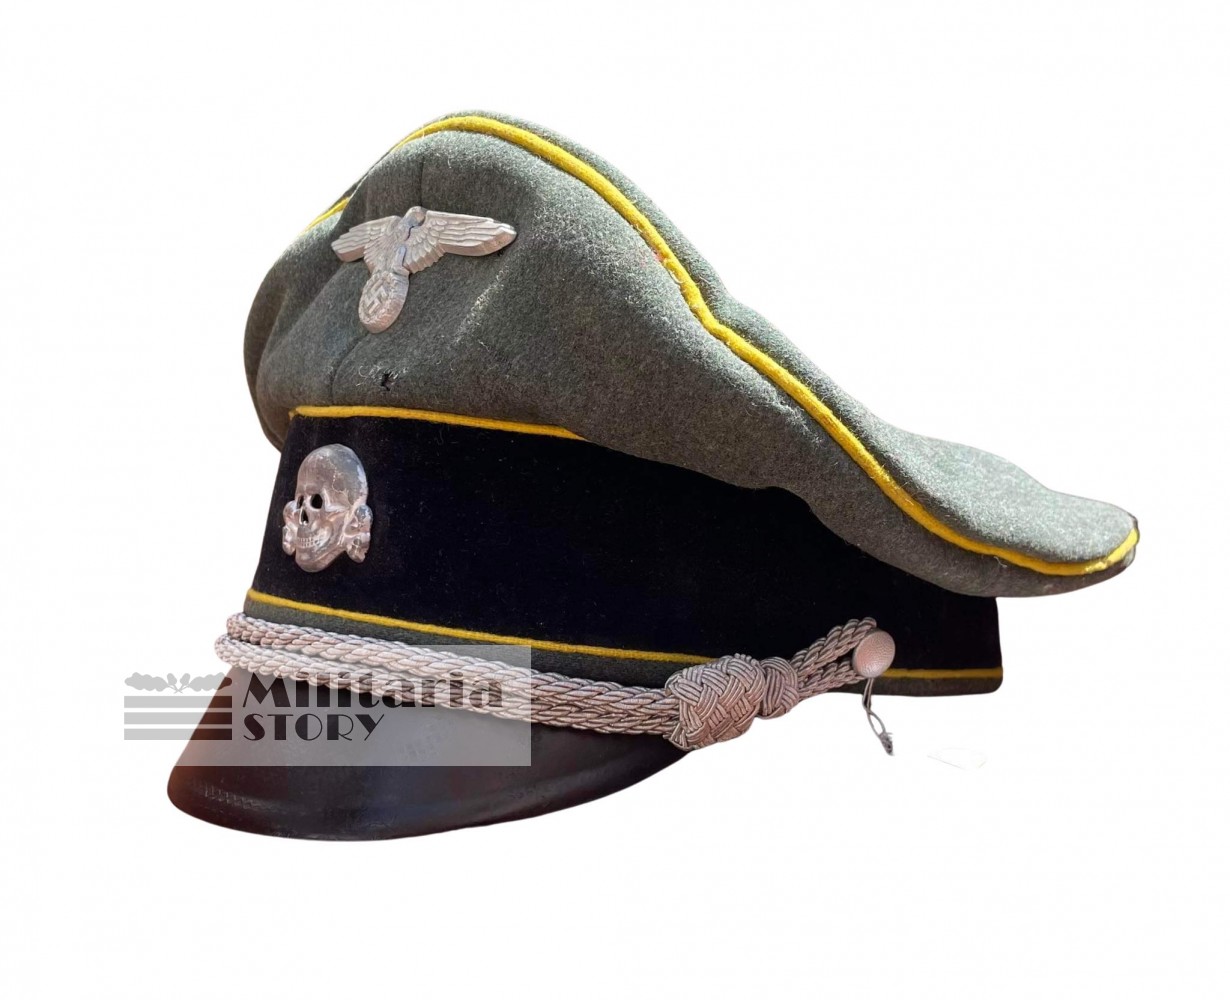 Waffen SS officer visor cap - Waffen SS officer visor cap: German Headgear